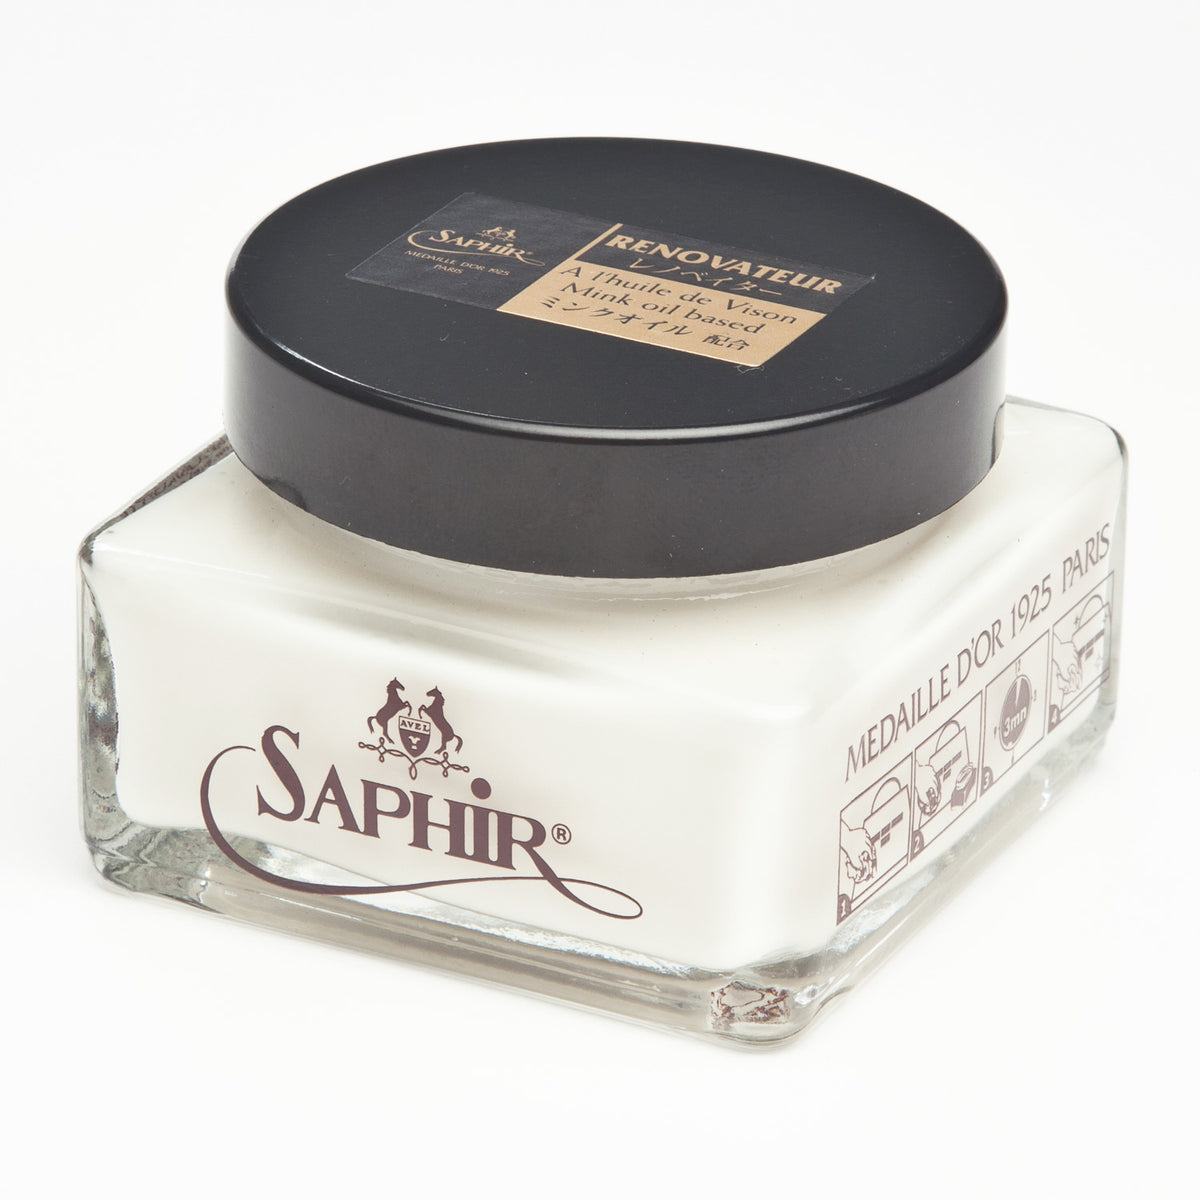 Saphir Médaille D'or Oiled Leather Cream 75ml